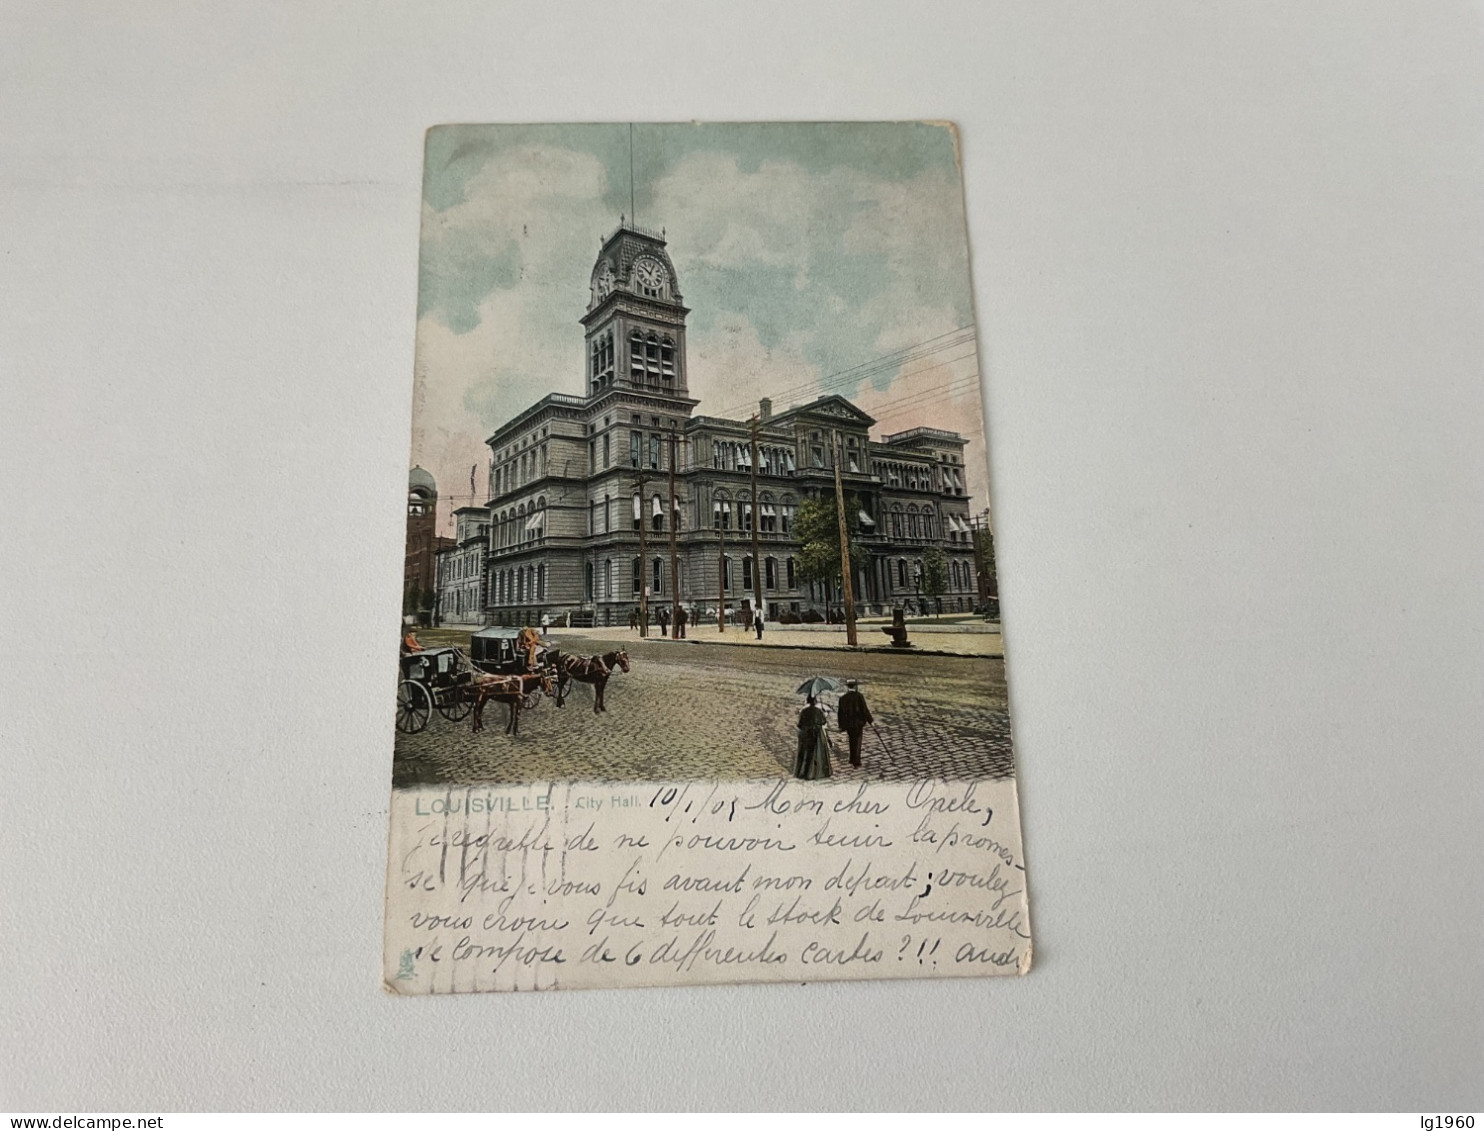 Louisville - 1905 - City Hall - Louisville